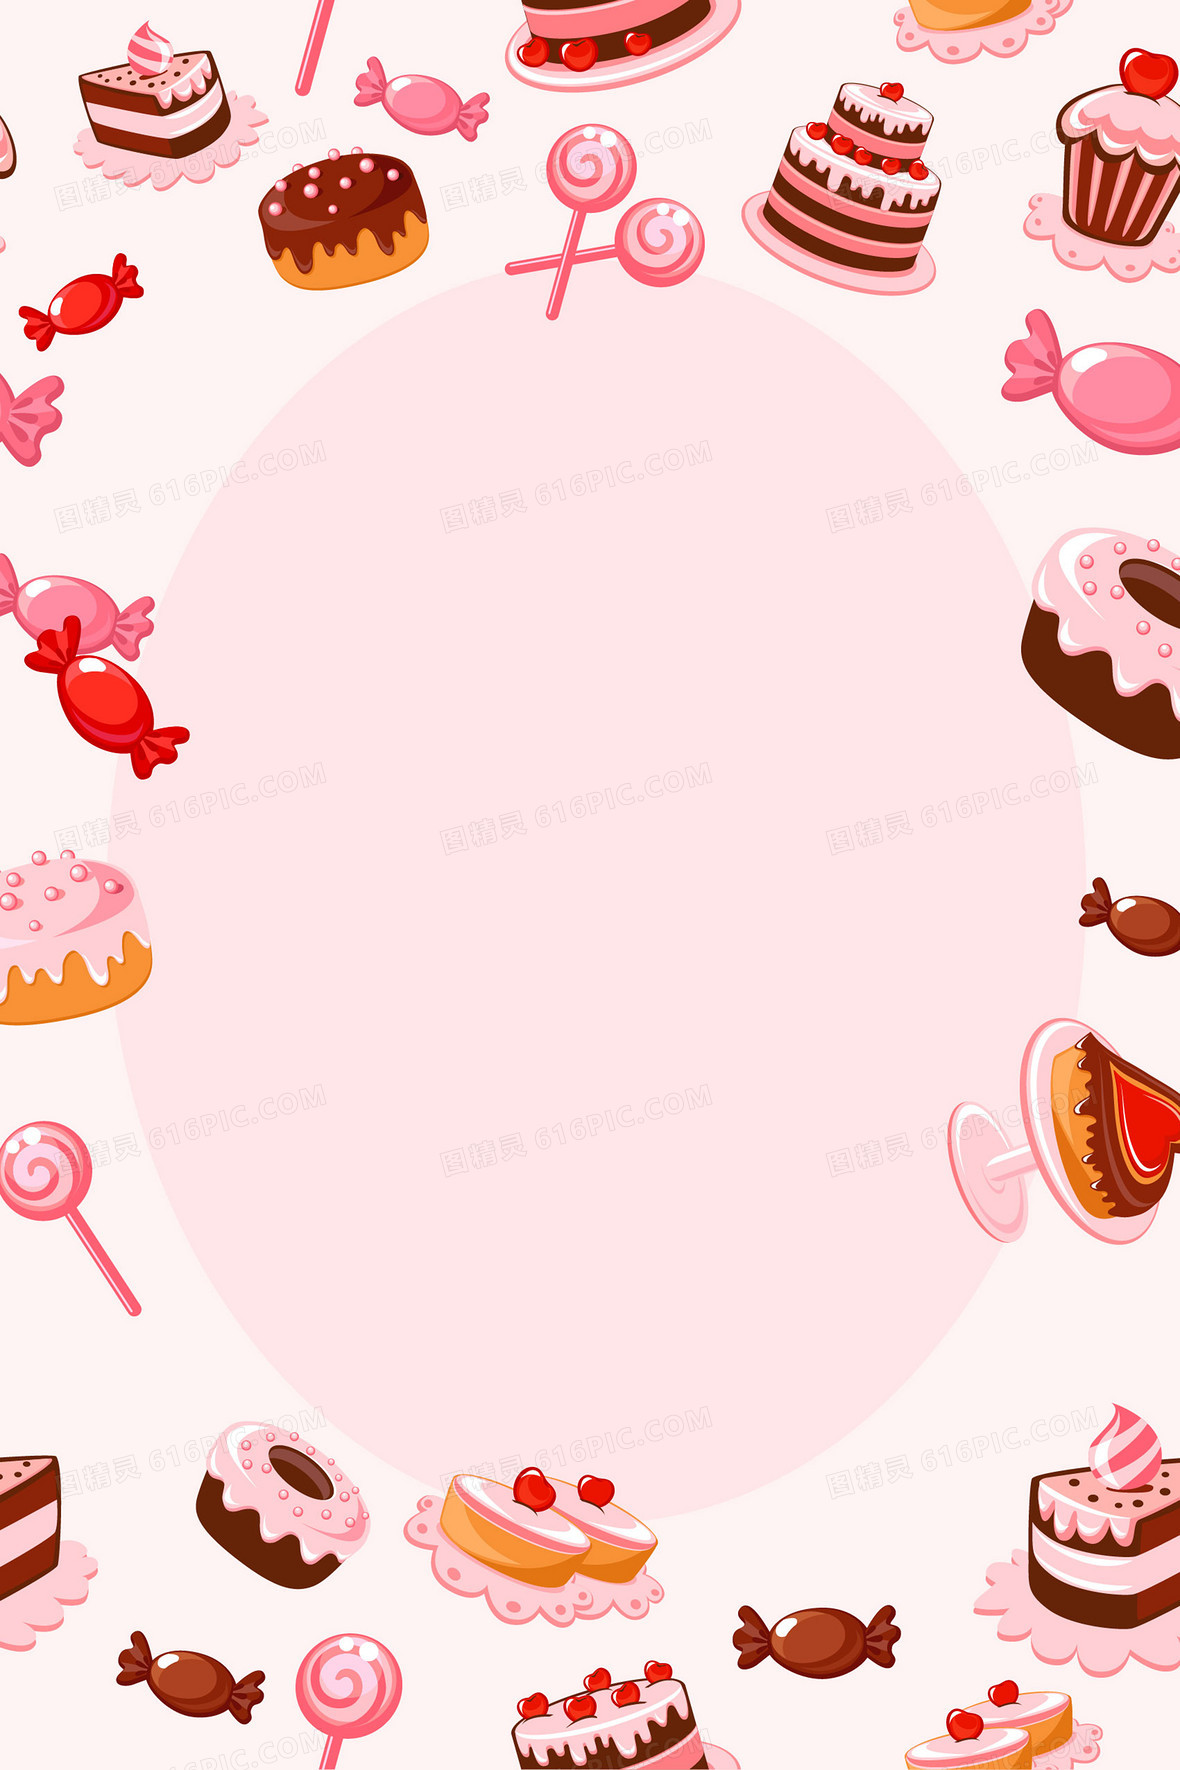 甜品蛋糕矢量海报背景图片下载_2000x2000像素jpg格式